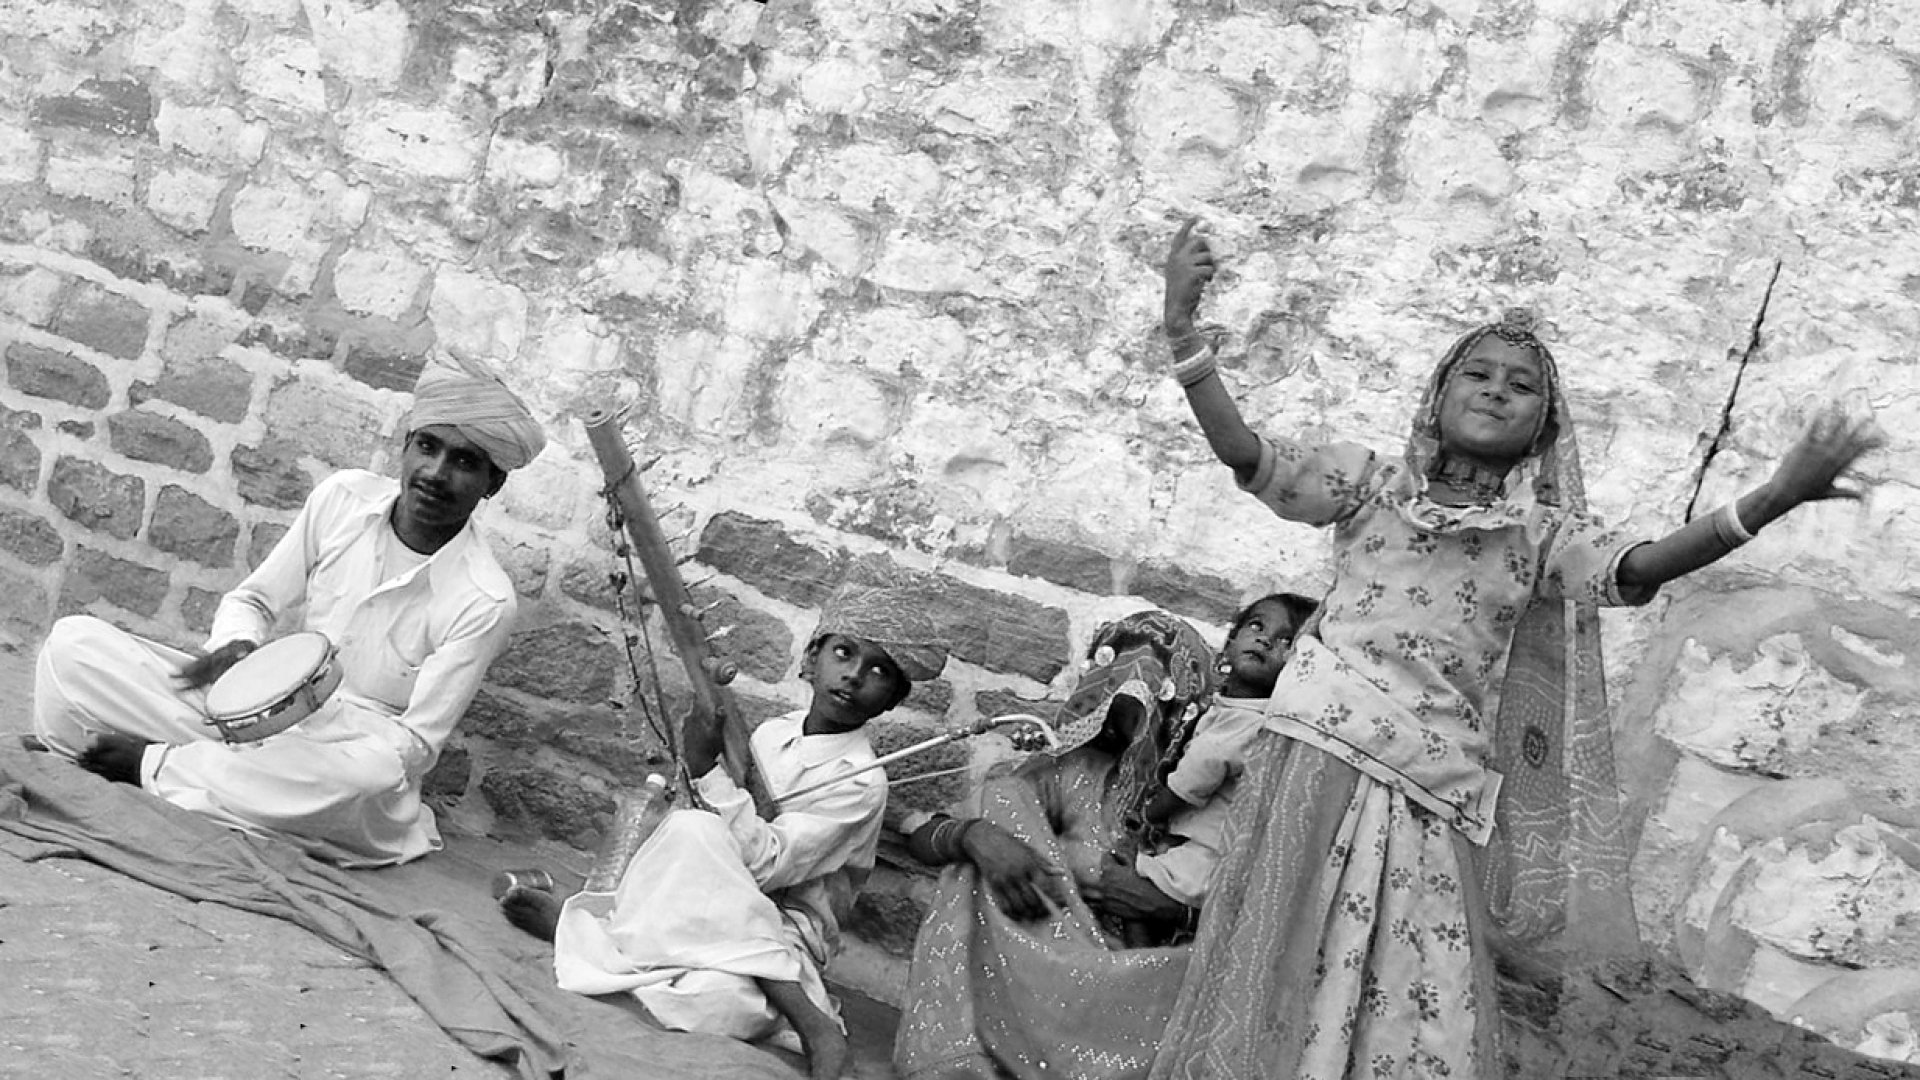 Baenkelsaenger Rajasthan 2004